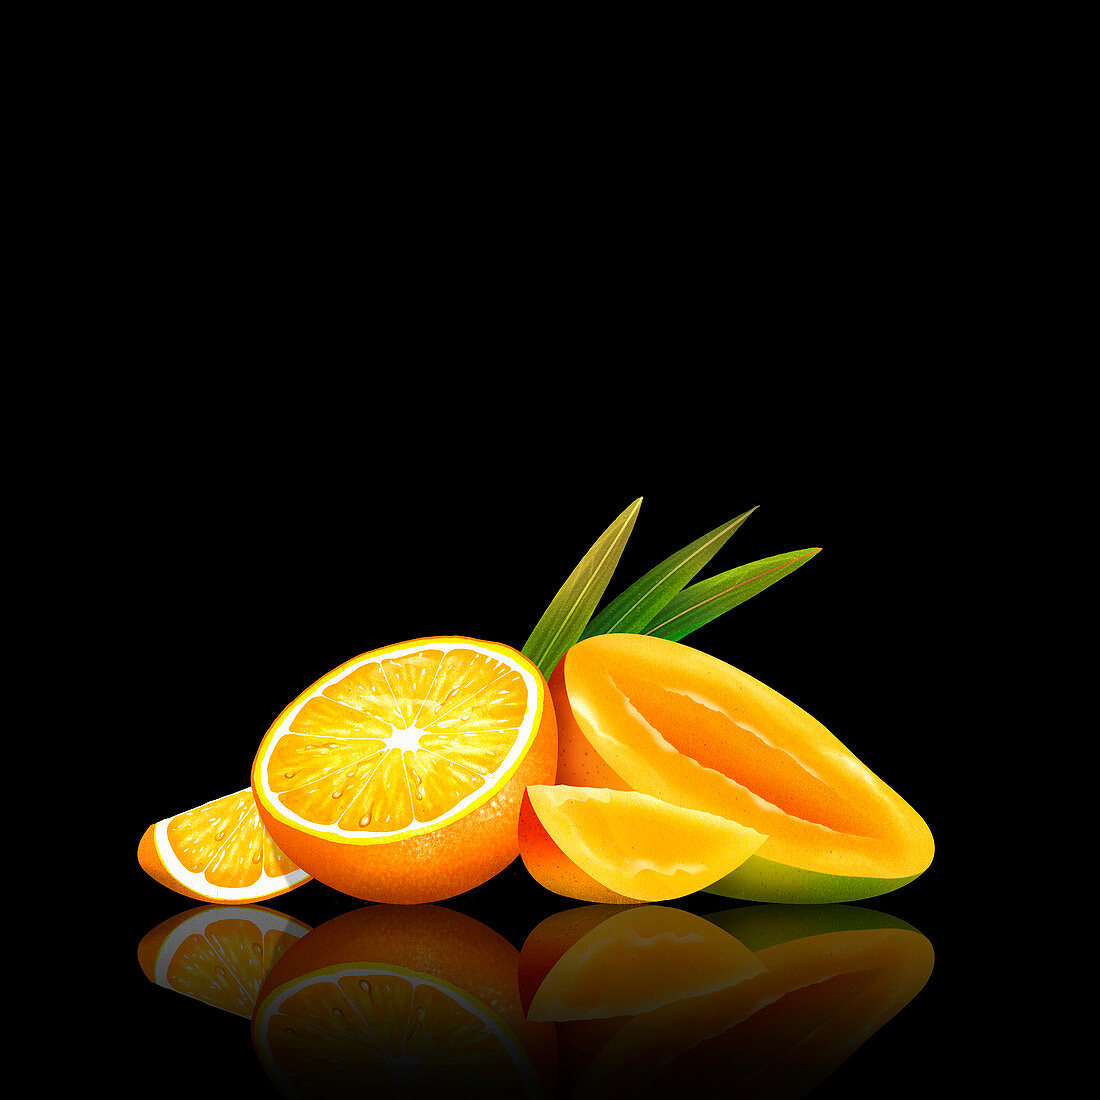 Fresh mango and orange, illustration